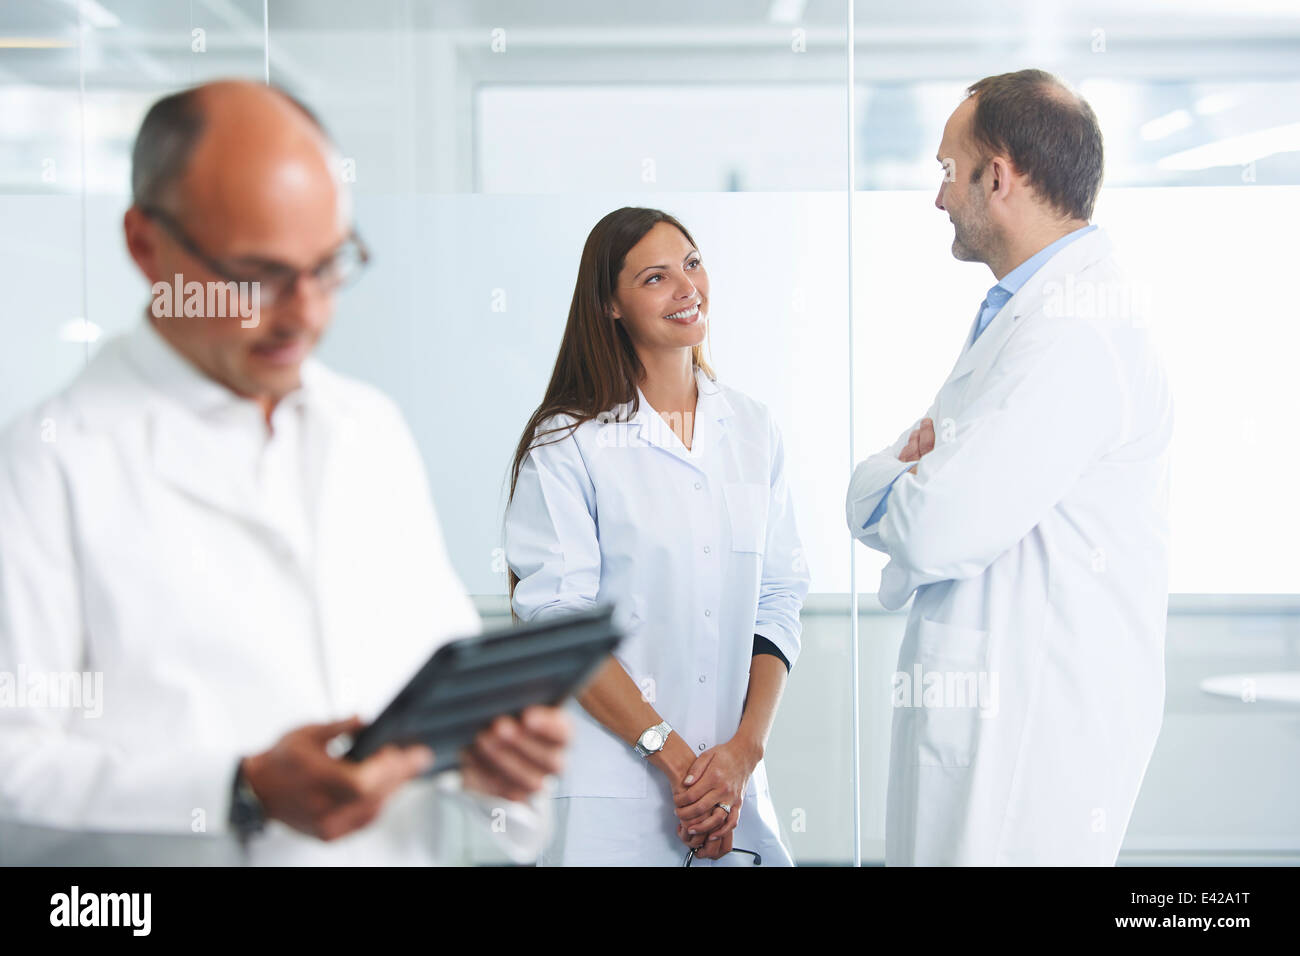 Medico maschio utilizzando tavoletta digitale, i colleghi in background Foto Stock